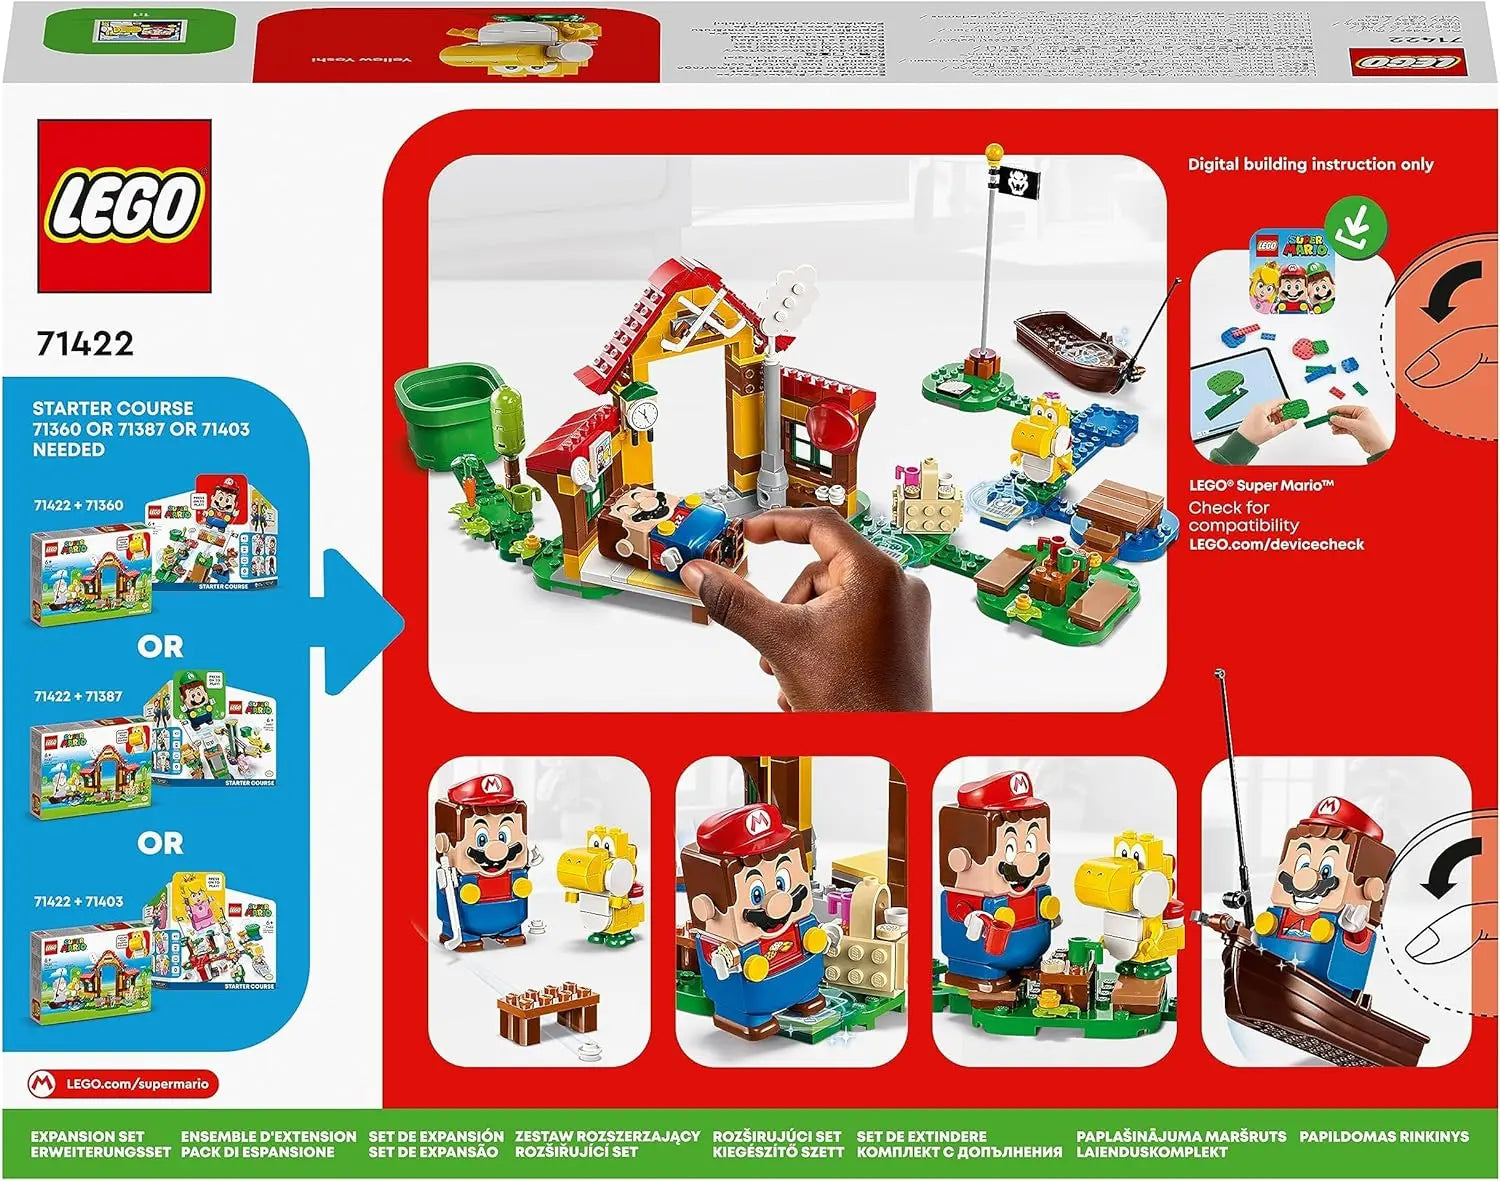 jouet LEGO 71422 Super Mario Ensemble d’Extension Pique-Nique chez Mario, Jouet à Construire avec Figurine de Yoshi lego